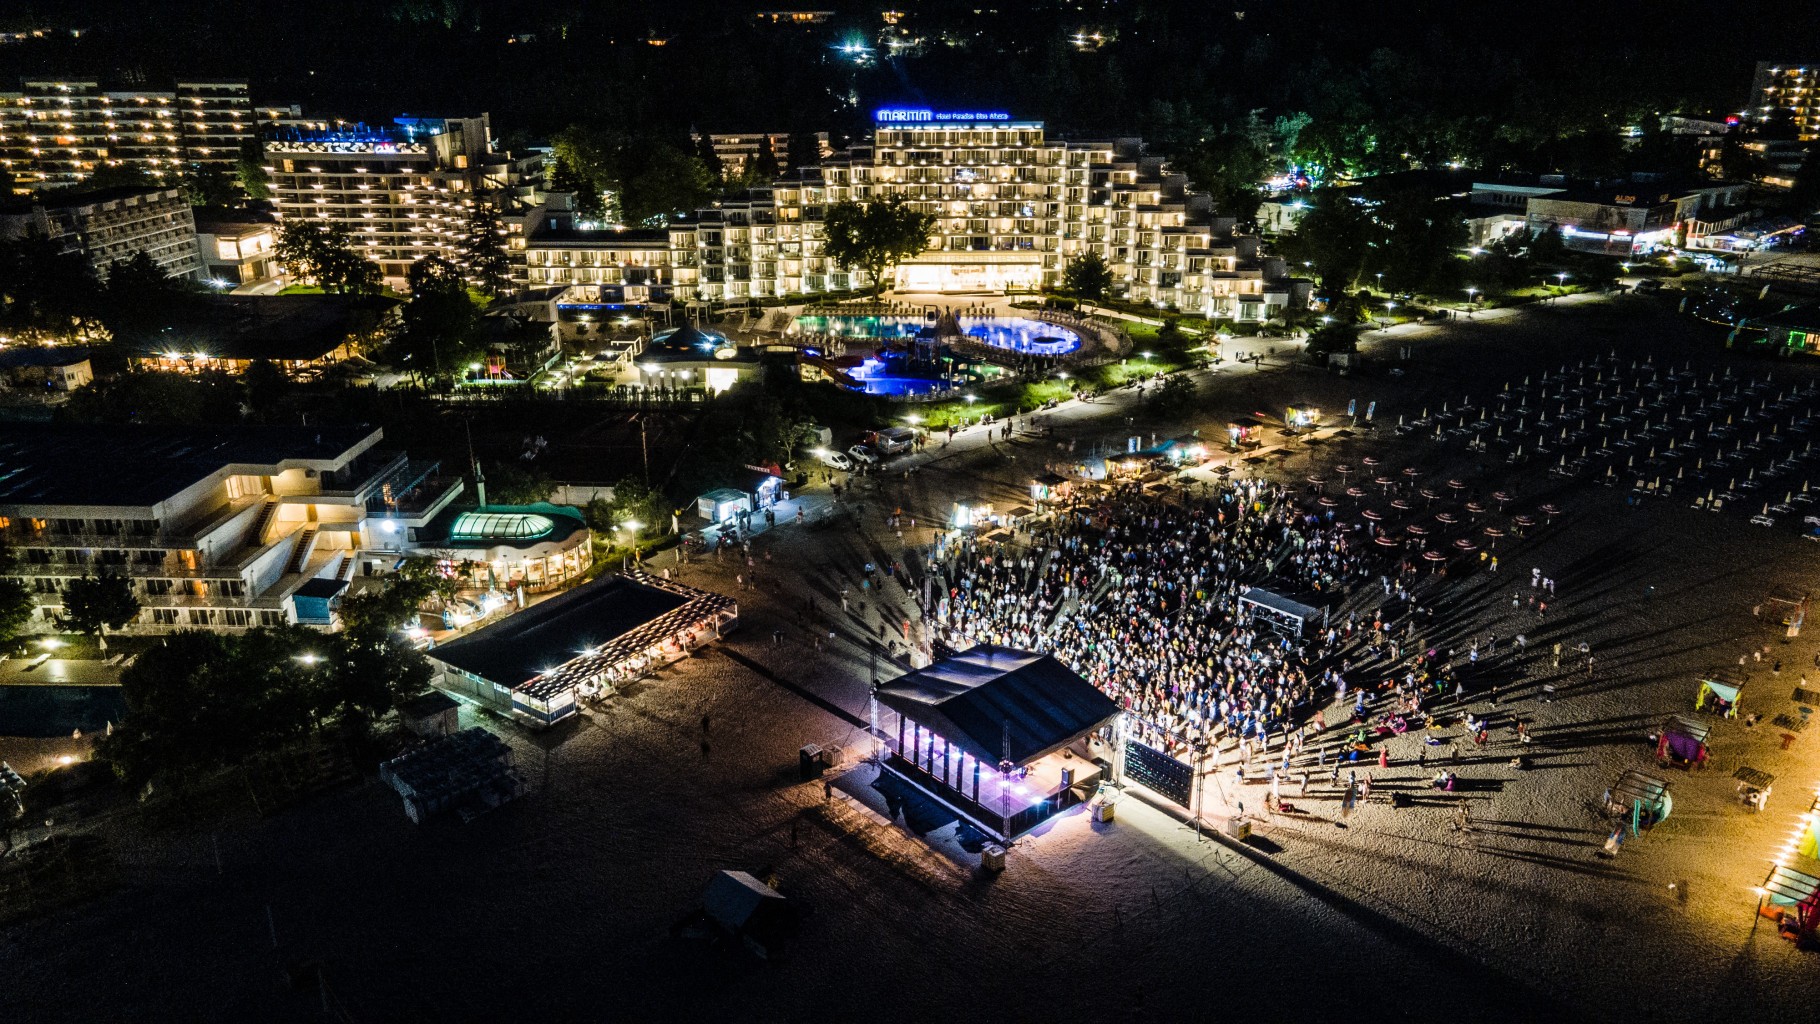 Хиляди танцуваха бачата под лунната светлина на плажа в Албена